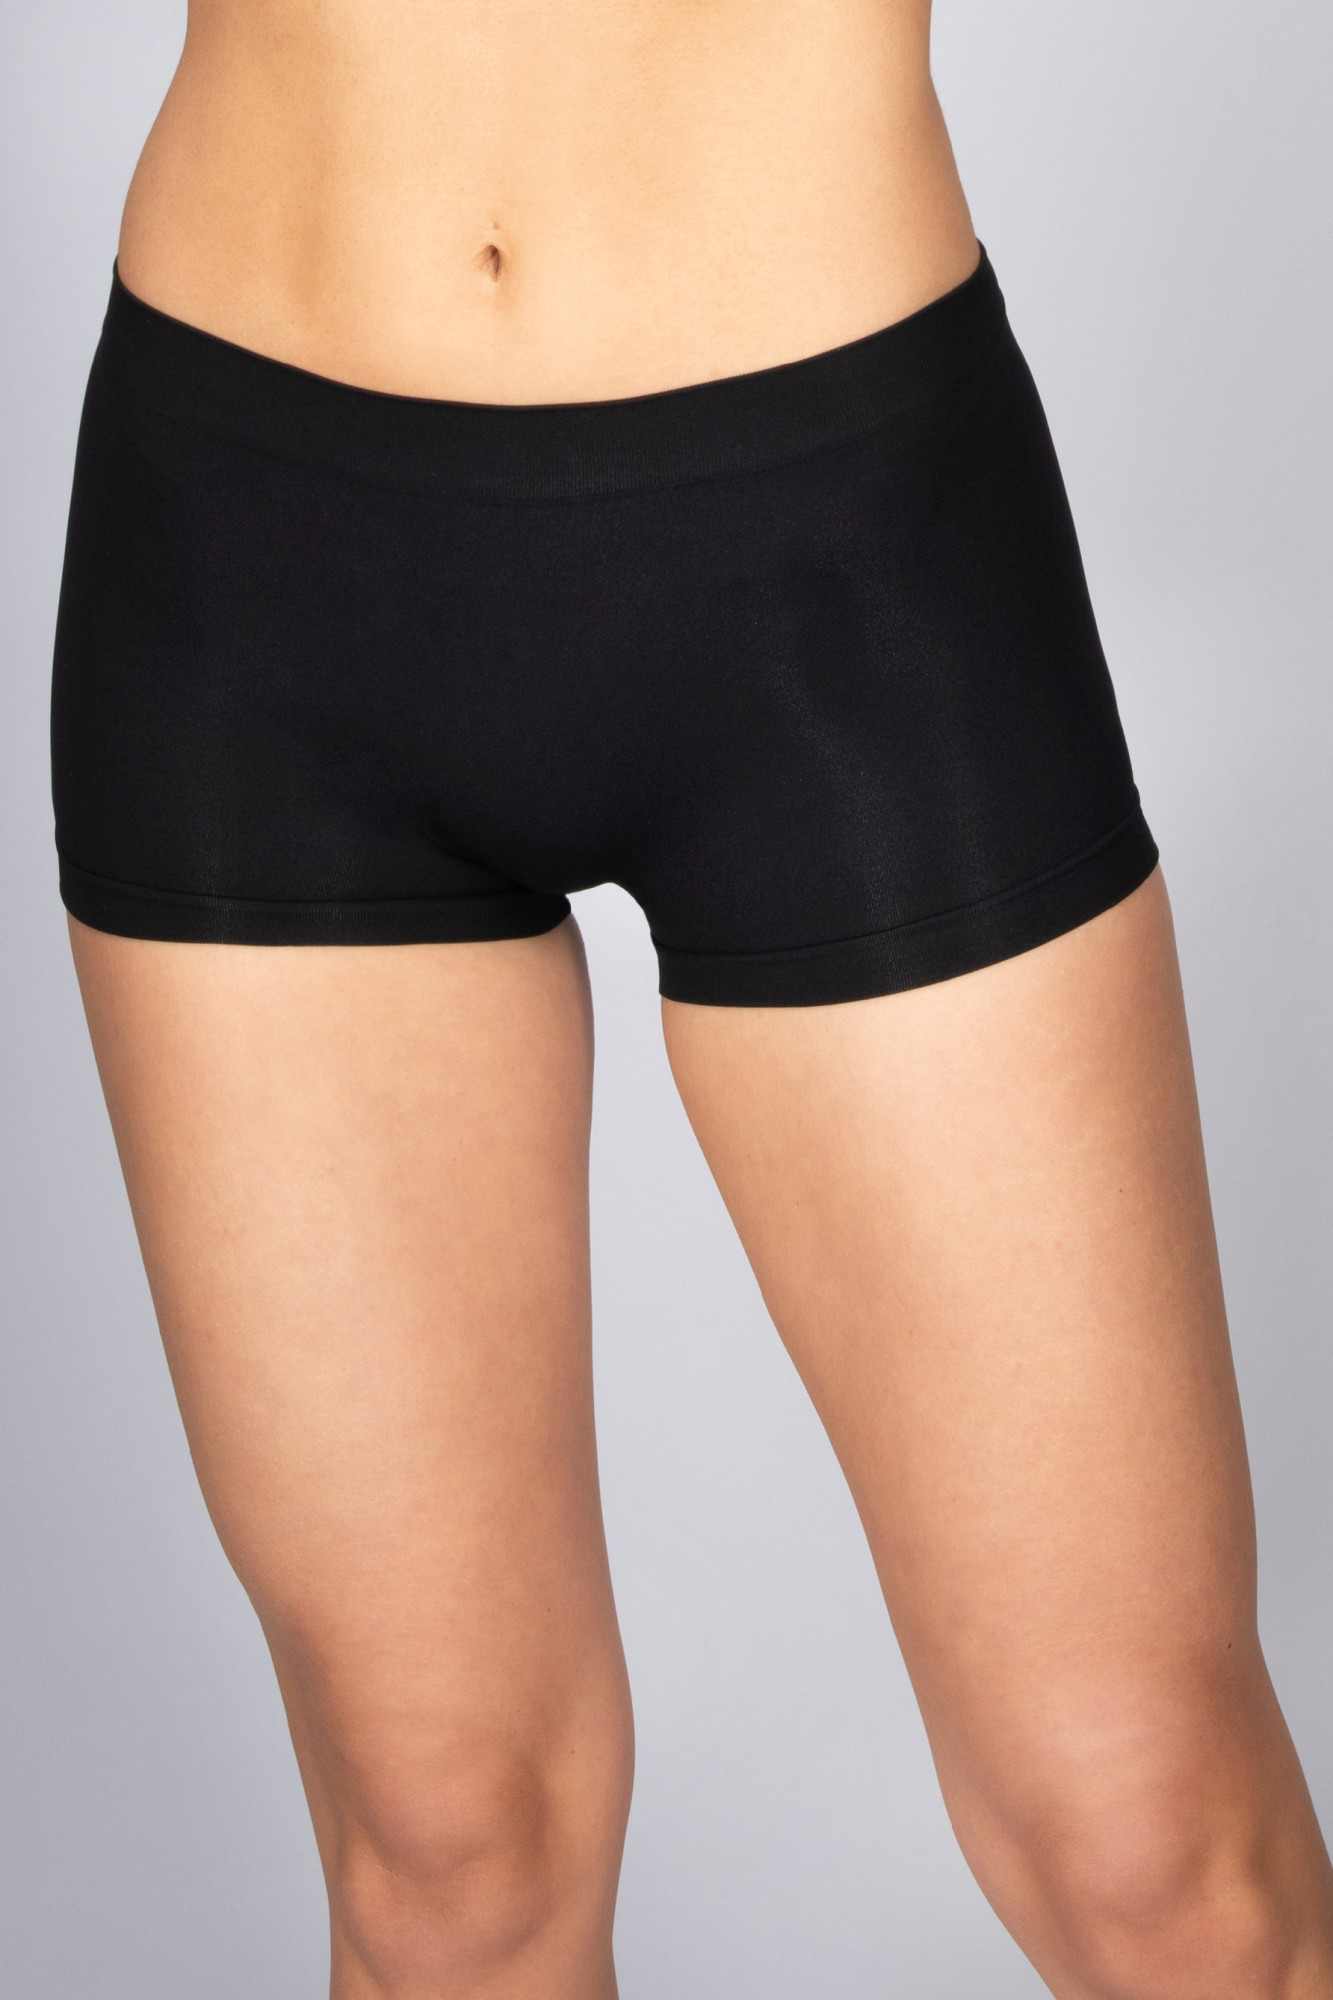 Kalhotky šortkového střihu bezešvé Panty Florida Intimidea Barva: Černá, velikost S/M